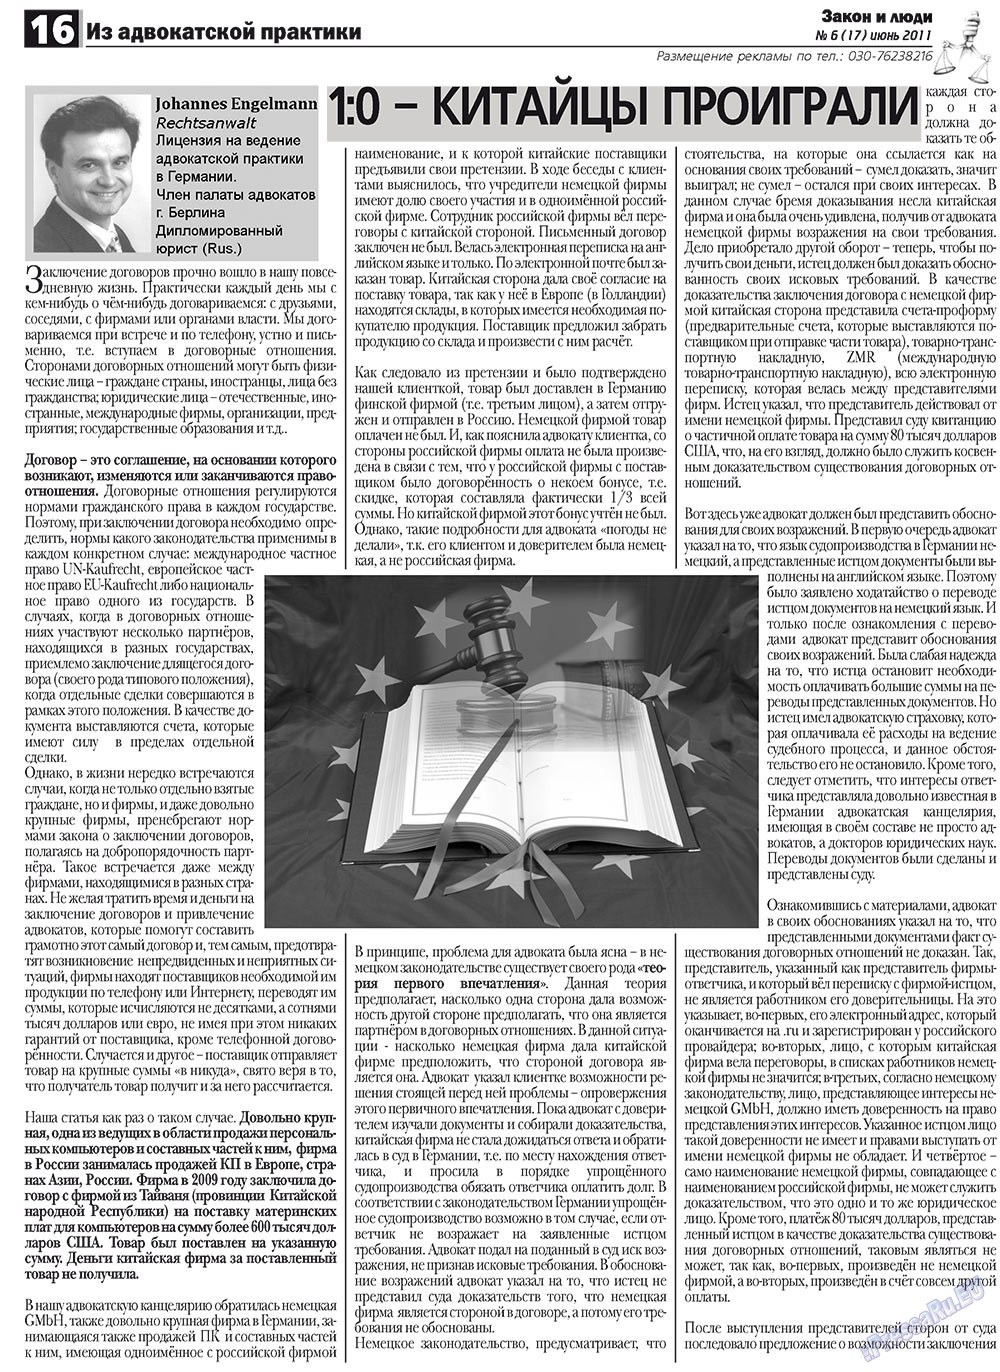 Закон и люди, газета. 2011 №6 стр.16